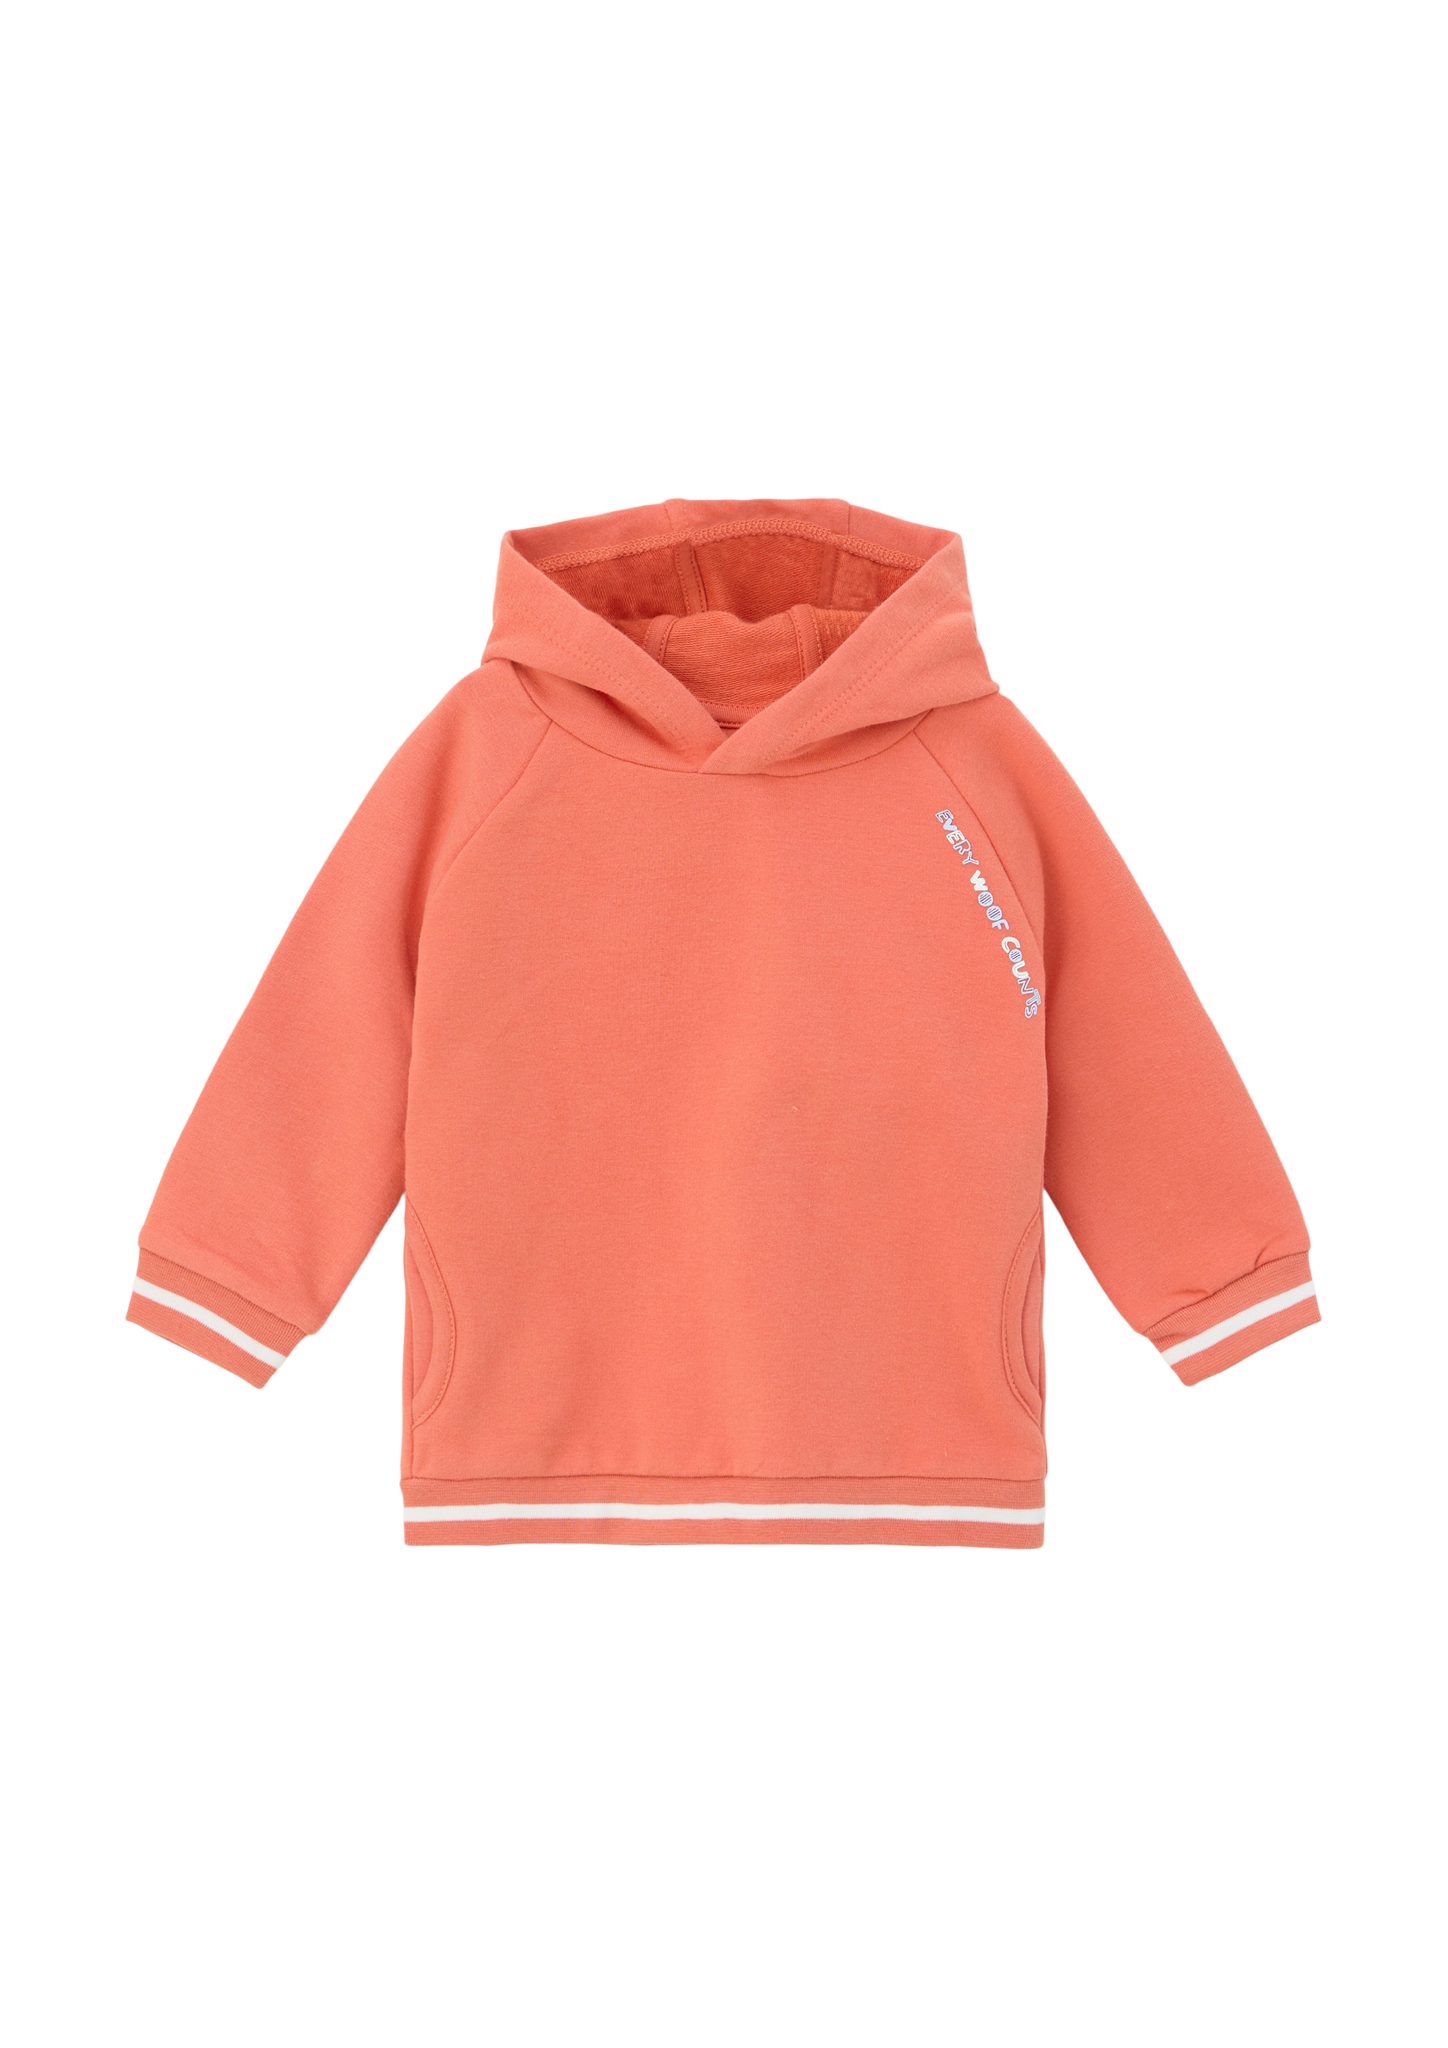 s.Oliver Sweatshirt Kapuzensweatshirt mit orange Rückenprint Streifen-Detail